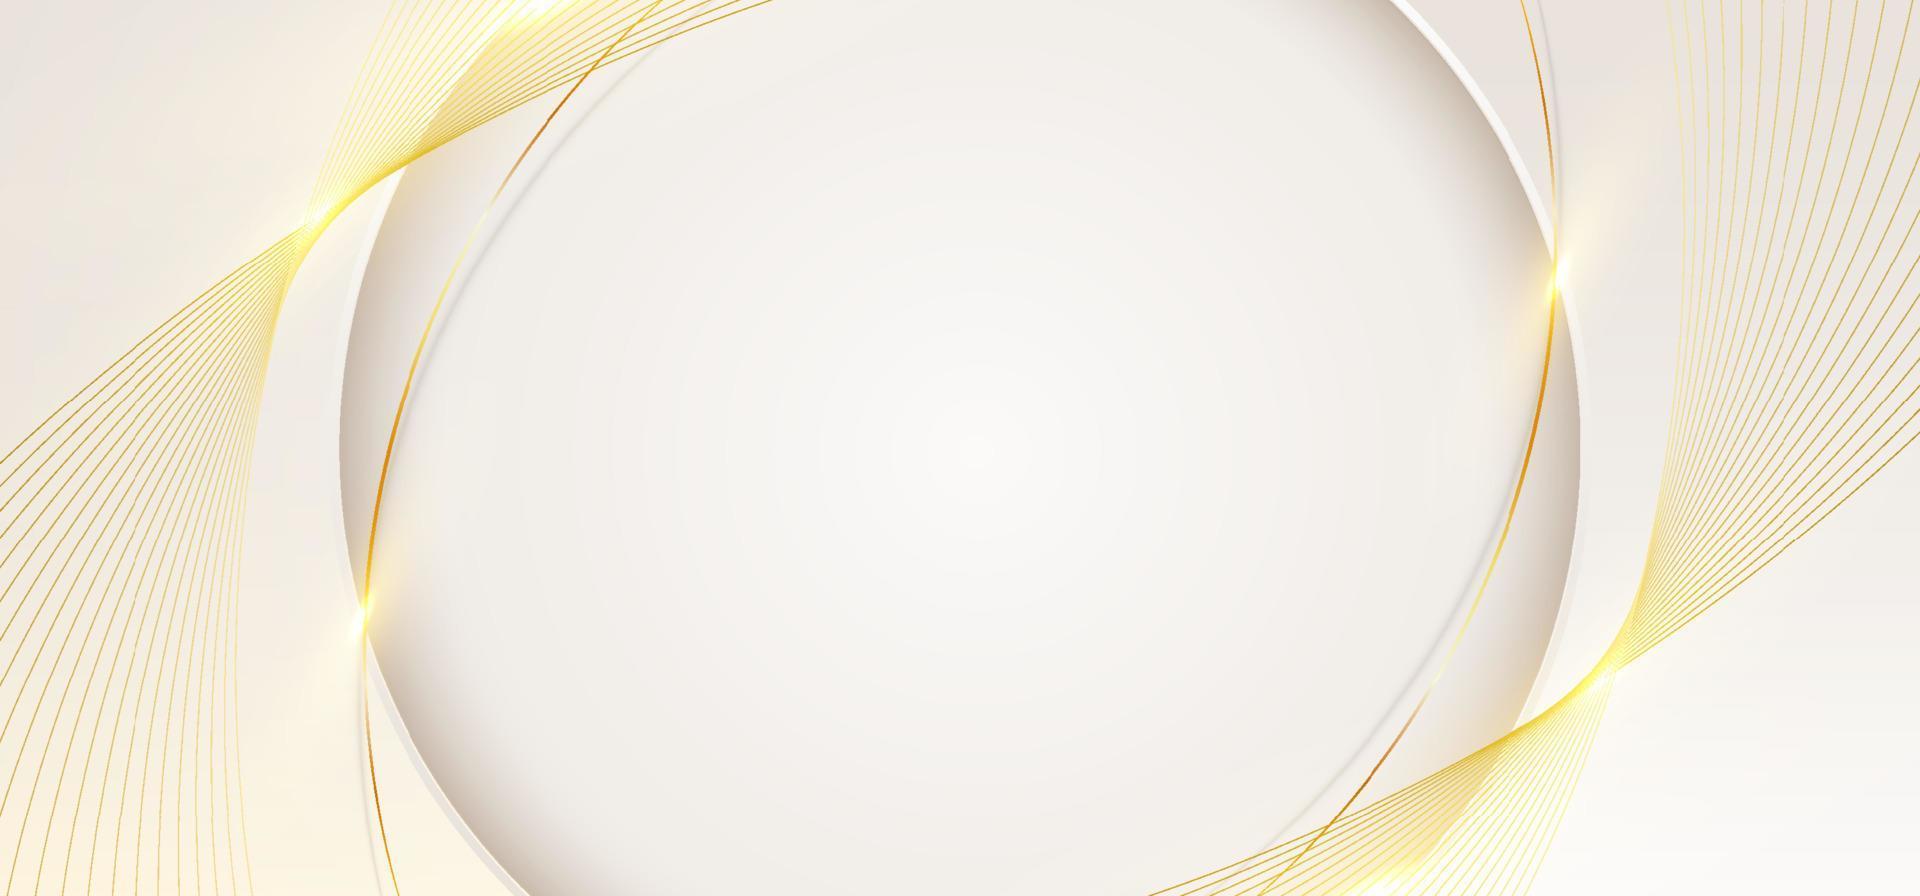 3d moderne Luxus Banner Template Design weiße Kreisform mit goldenen geschwungenen Linien Lichtfunken auf sauberem Hintergrund vektor